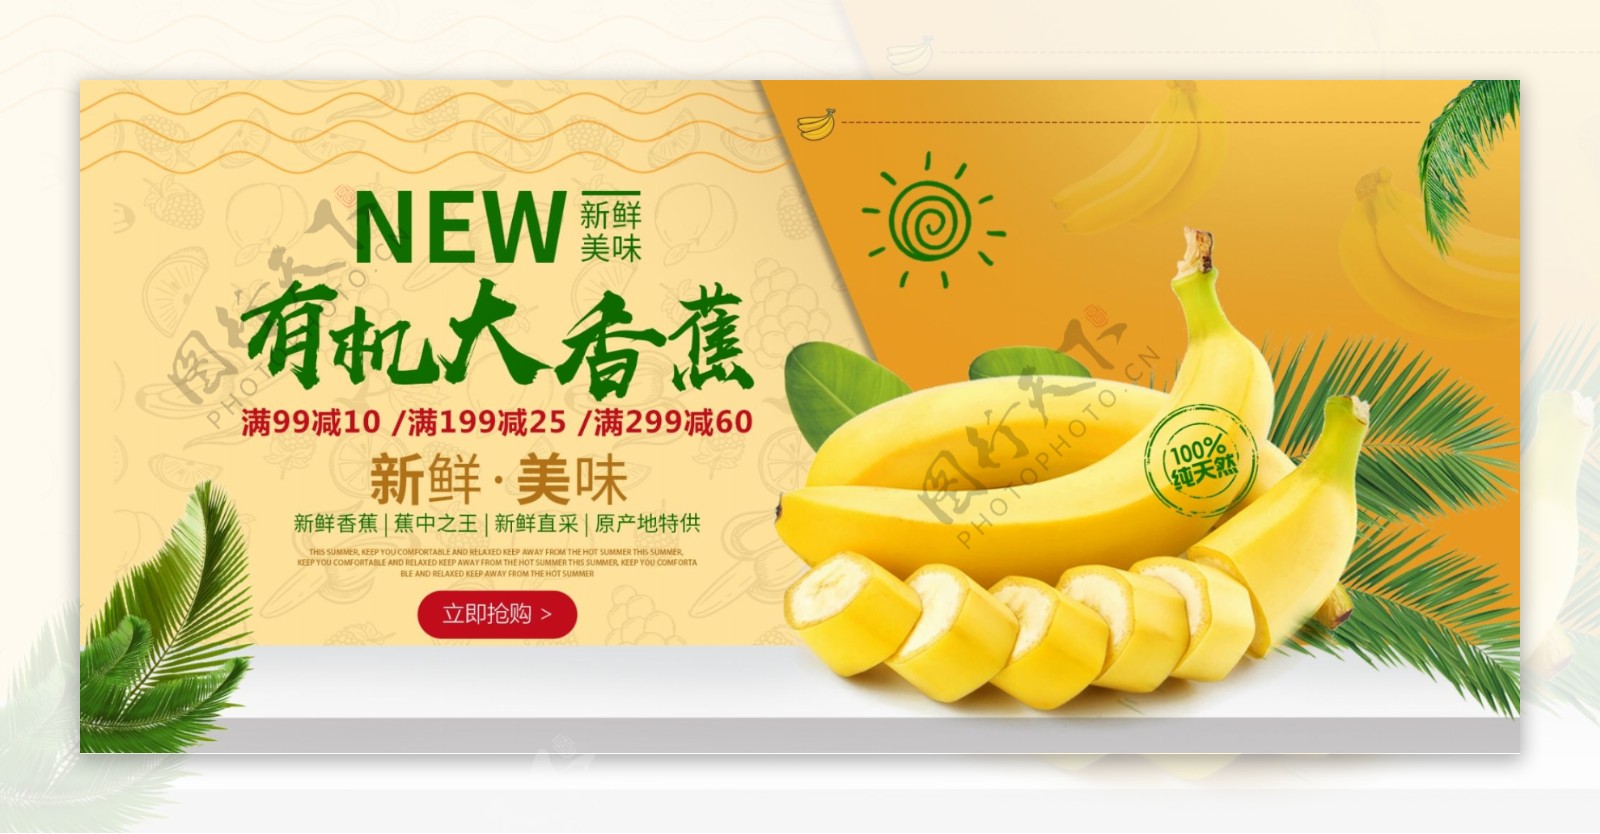 进口有机香蕉水果促销海报